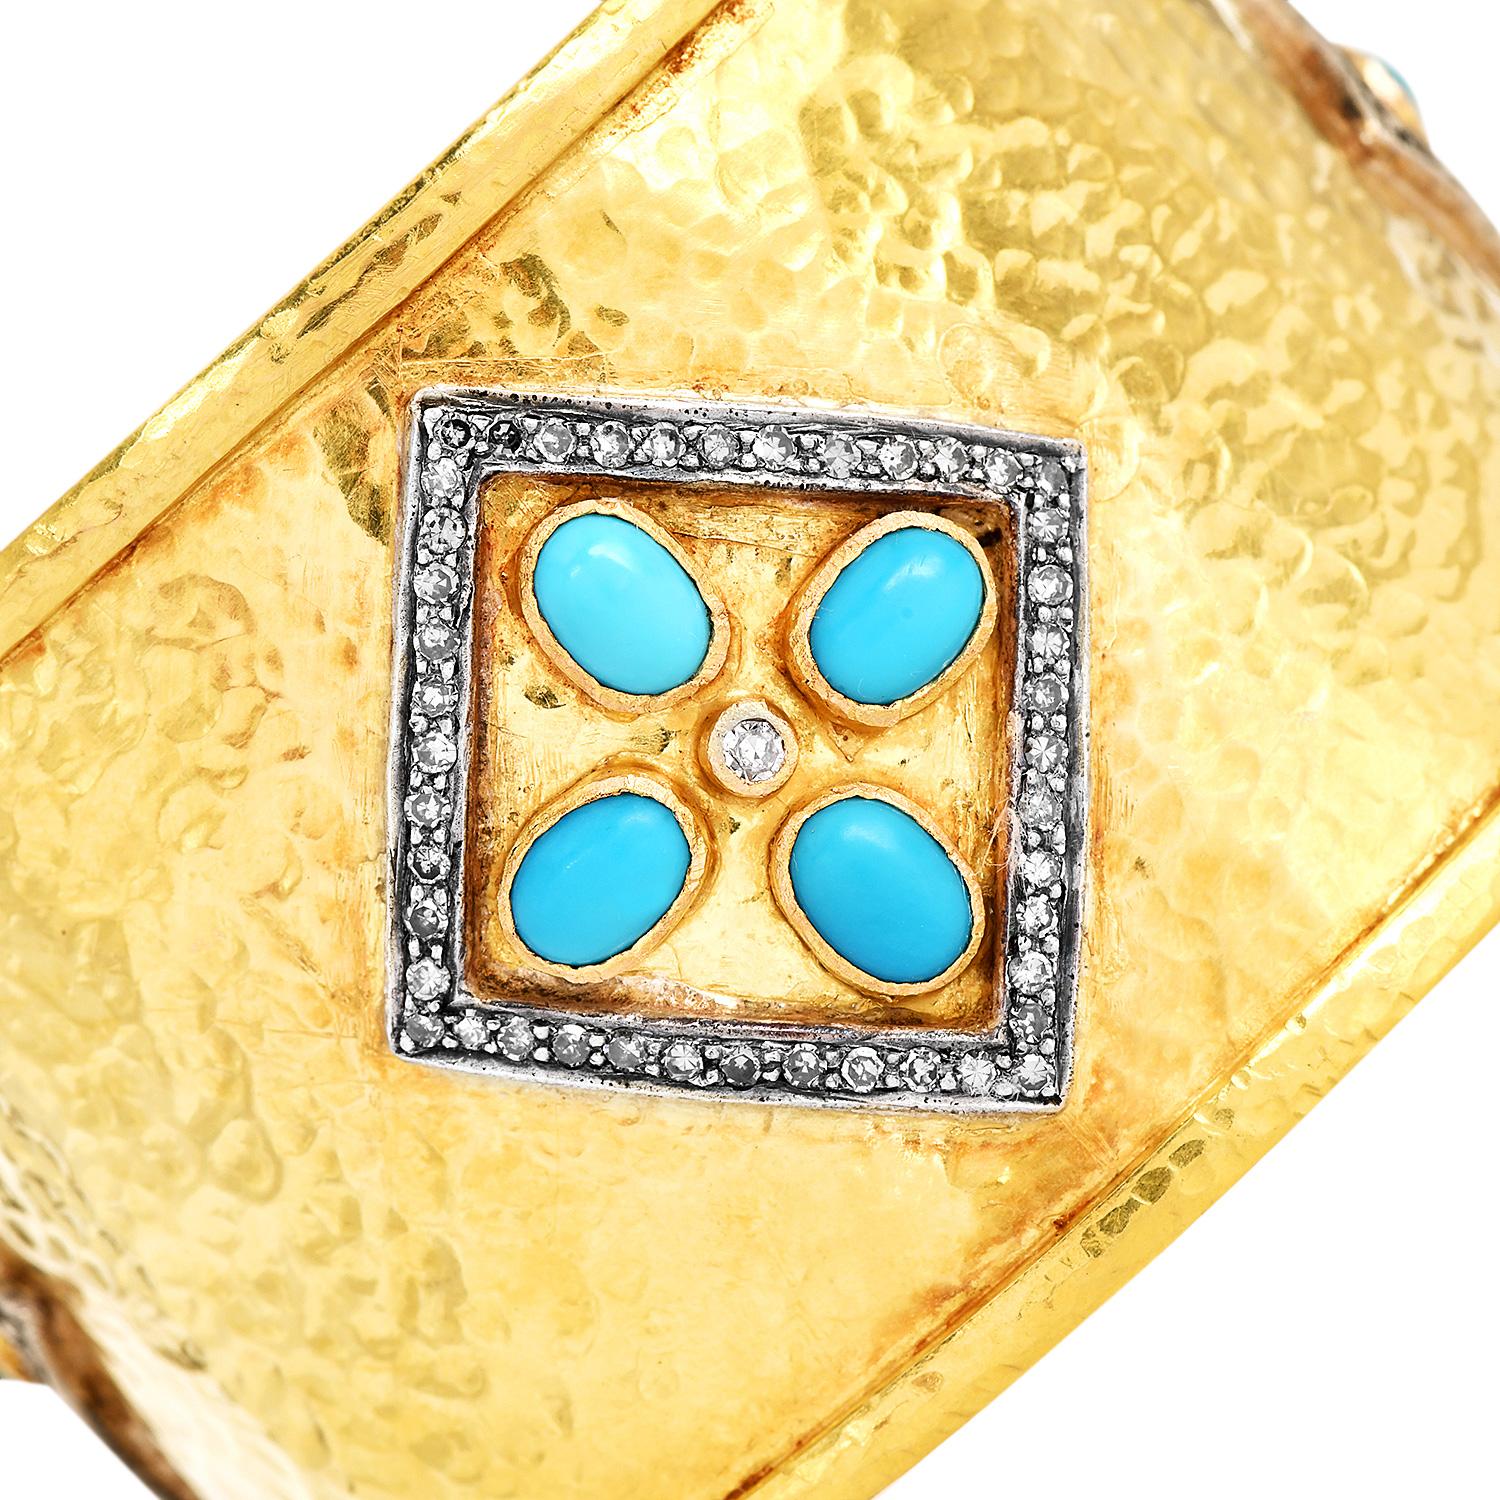 Dieser Nachlass Diamant Türkis 18K Gold breite Manschette Armband ist in 18K Gelbgold breite Manschette Armband geschmiedet, gehämmert strukturiert mit einem glatten Rand und bequeme Passform.

Verziert mit drei Drachen, die mit natürlichen